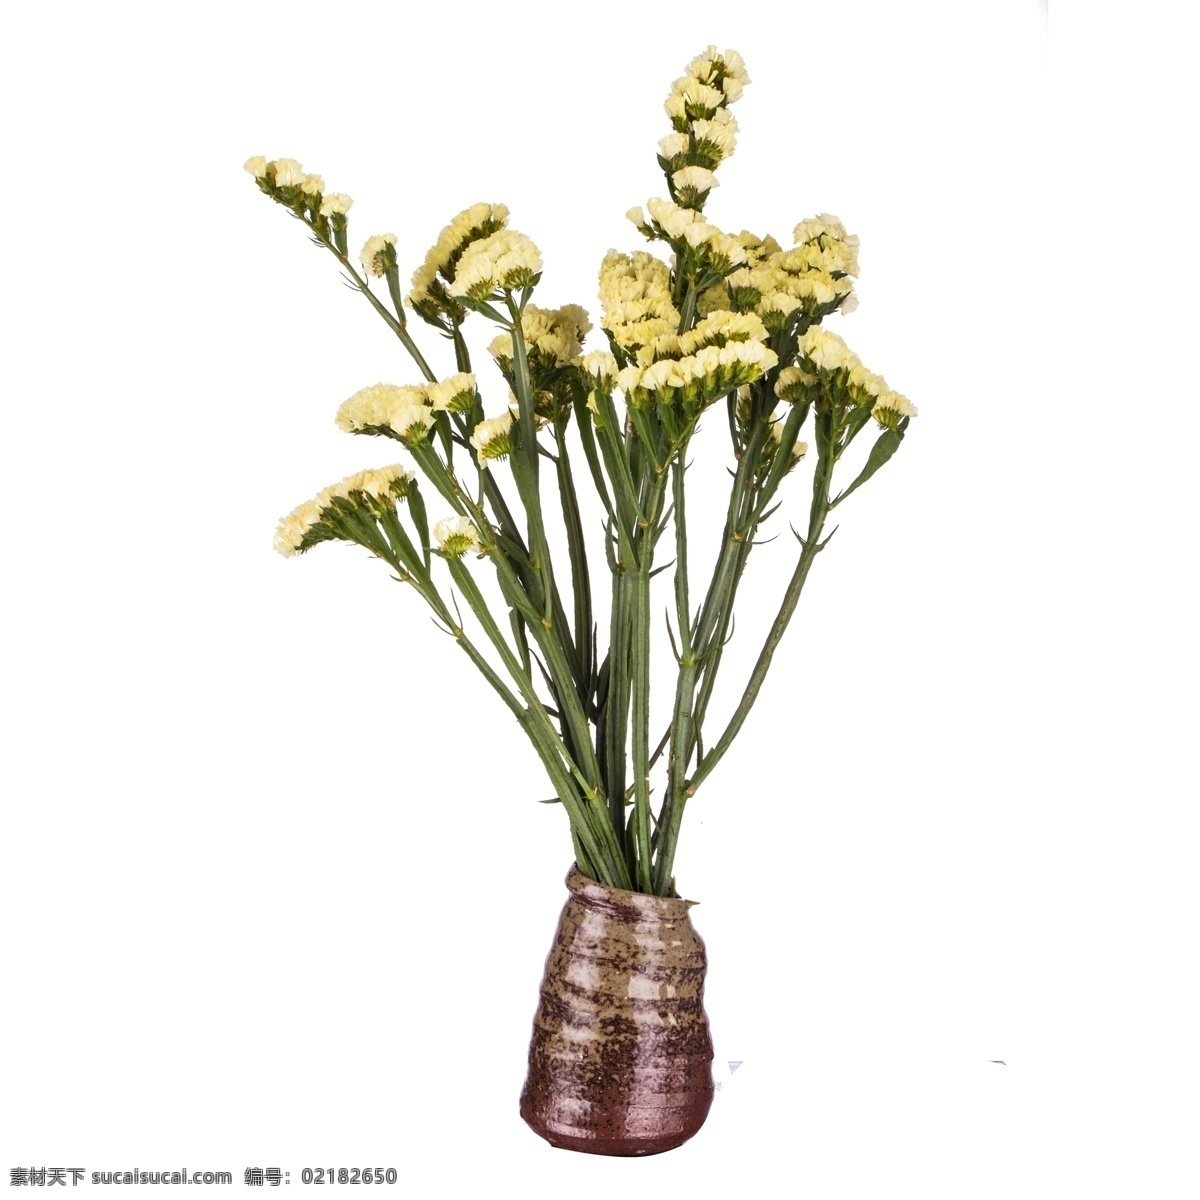 彩色 创意 植物 花朵 元素 真实 小黄花 花瓶 装饰 大自然 生机勃勃 开花 纹理 质感